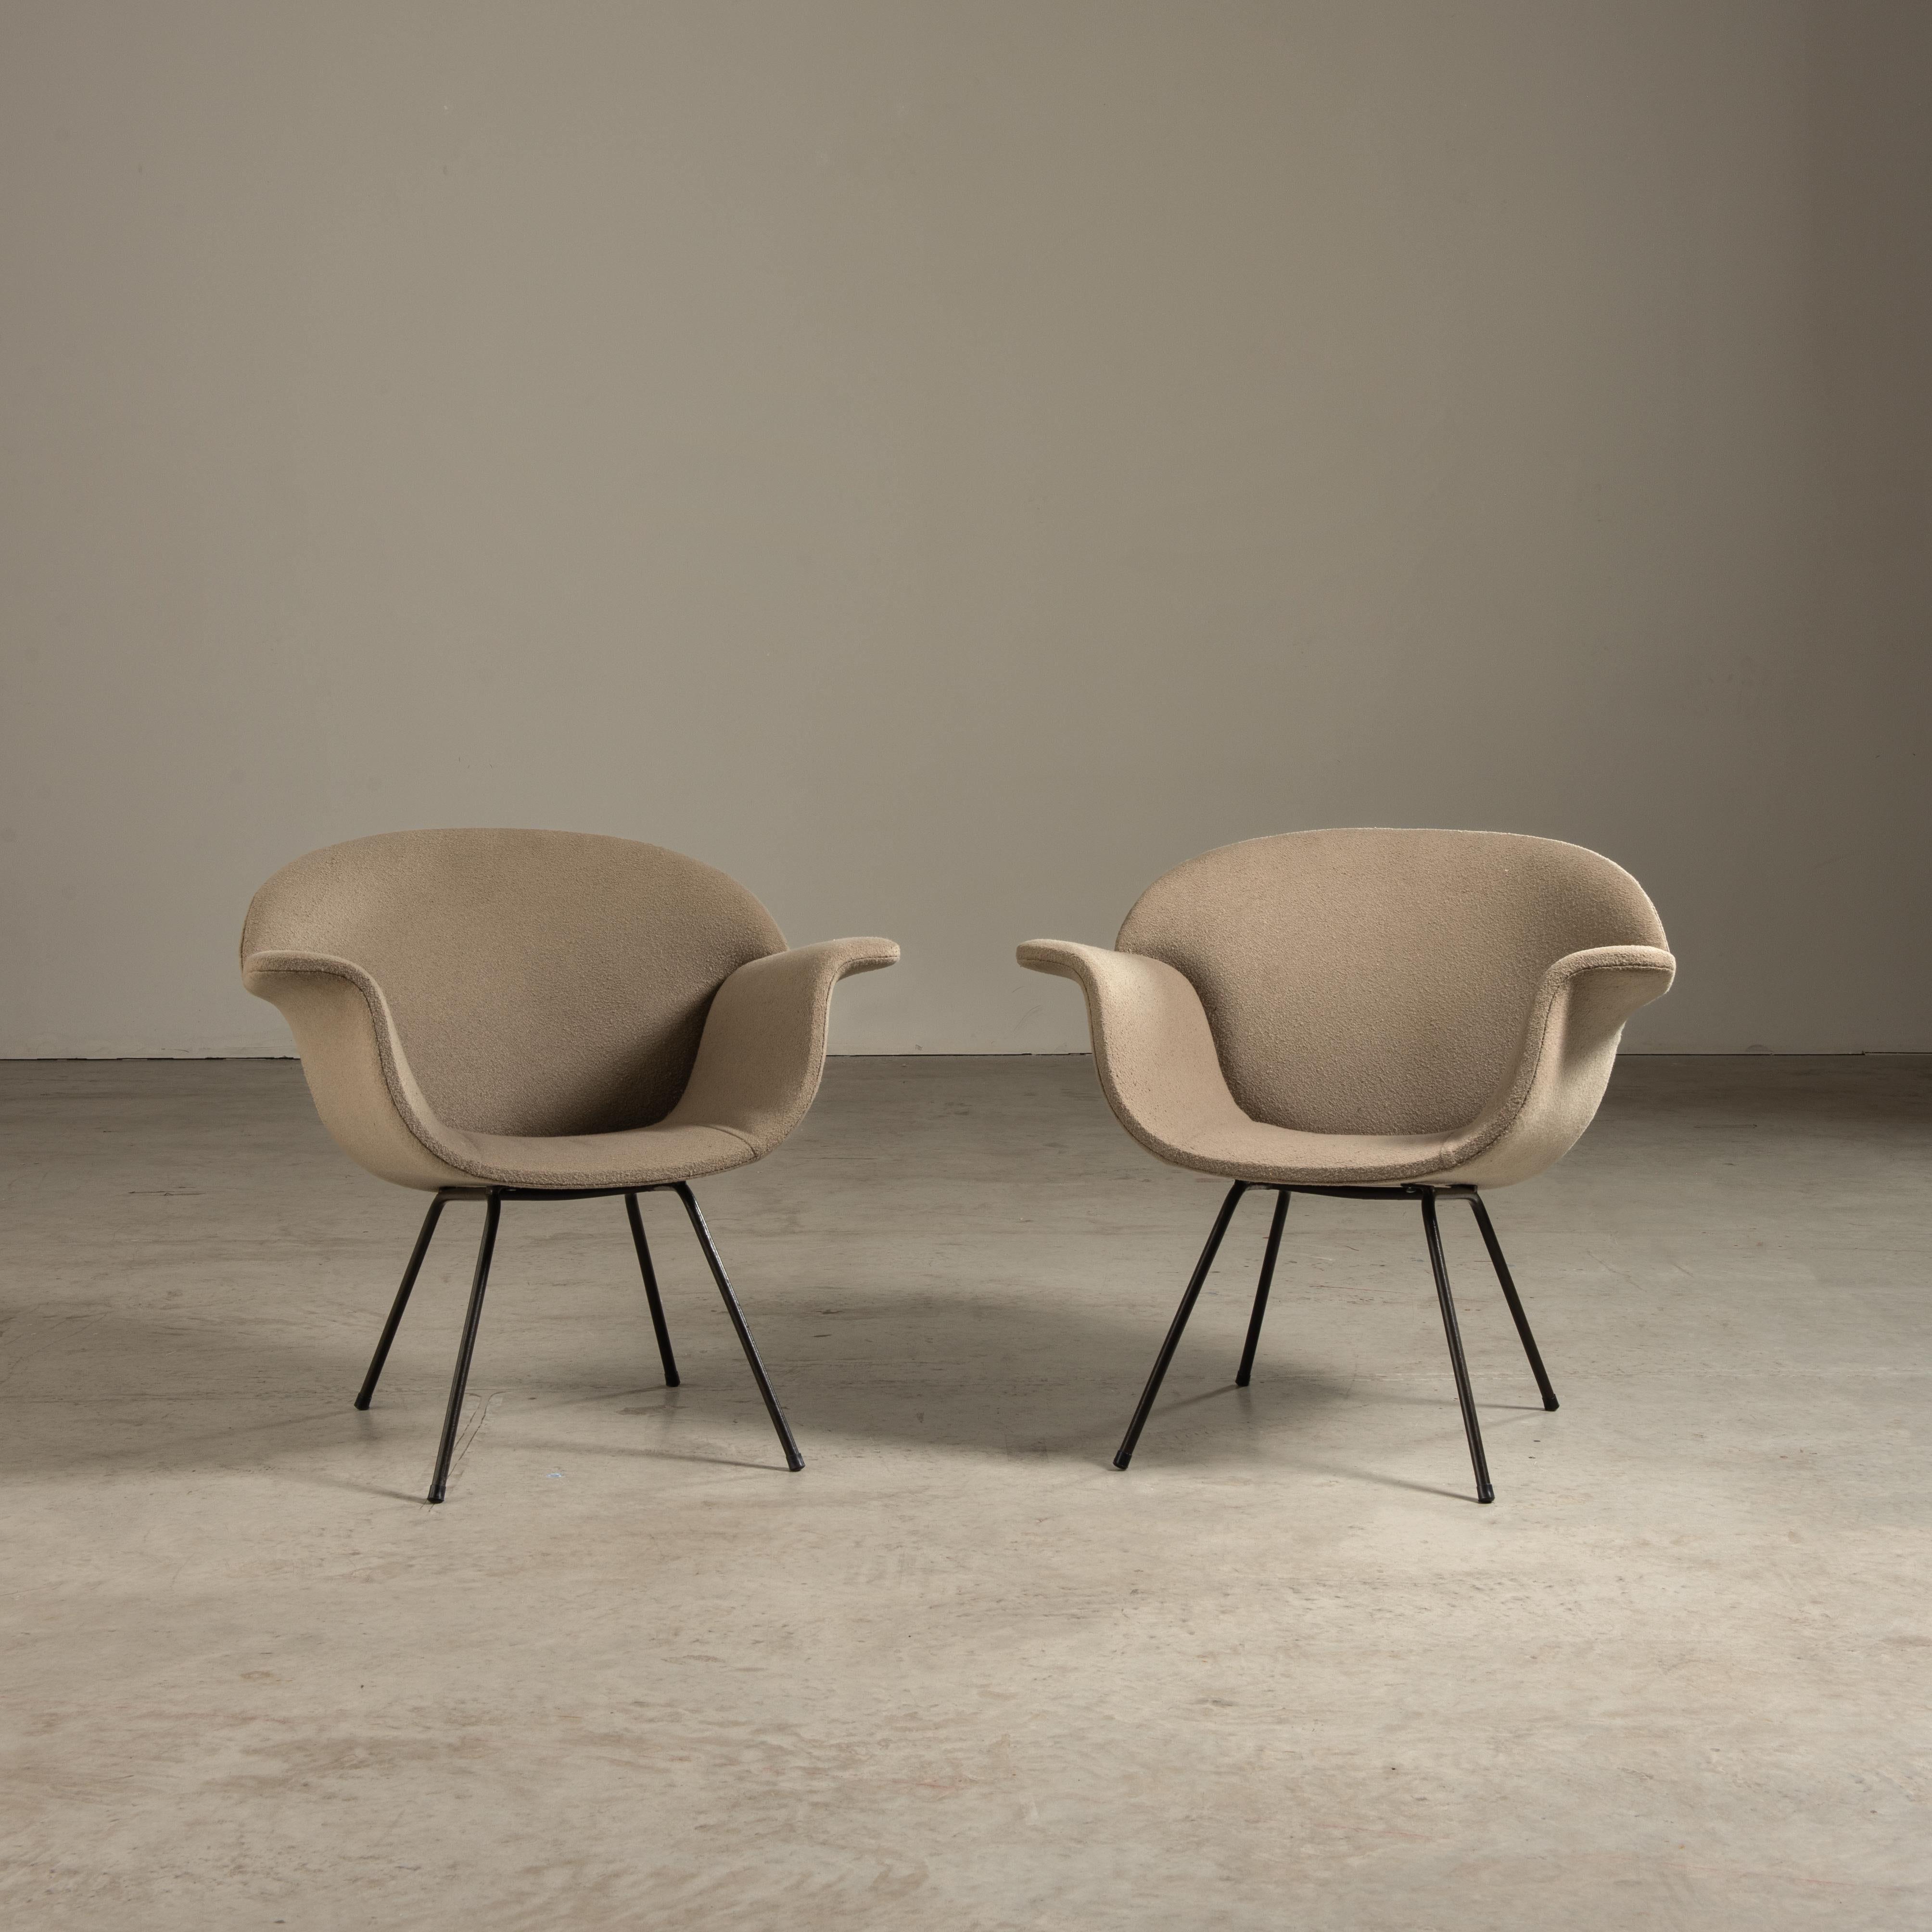 Im Bereich des Möbeldesigns gibt es nur wenige Strömungen, die den Zeitgeist ihrer Epoche so prägnant einfangen wie der brasilianische Mid-Century-Modern-Stil, ein Zeugnis für den Innovationsgeist von Designern wie Carlo Hauner. Seine Stühle, die